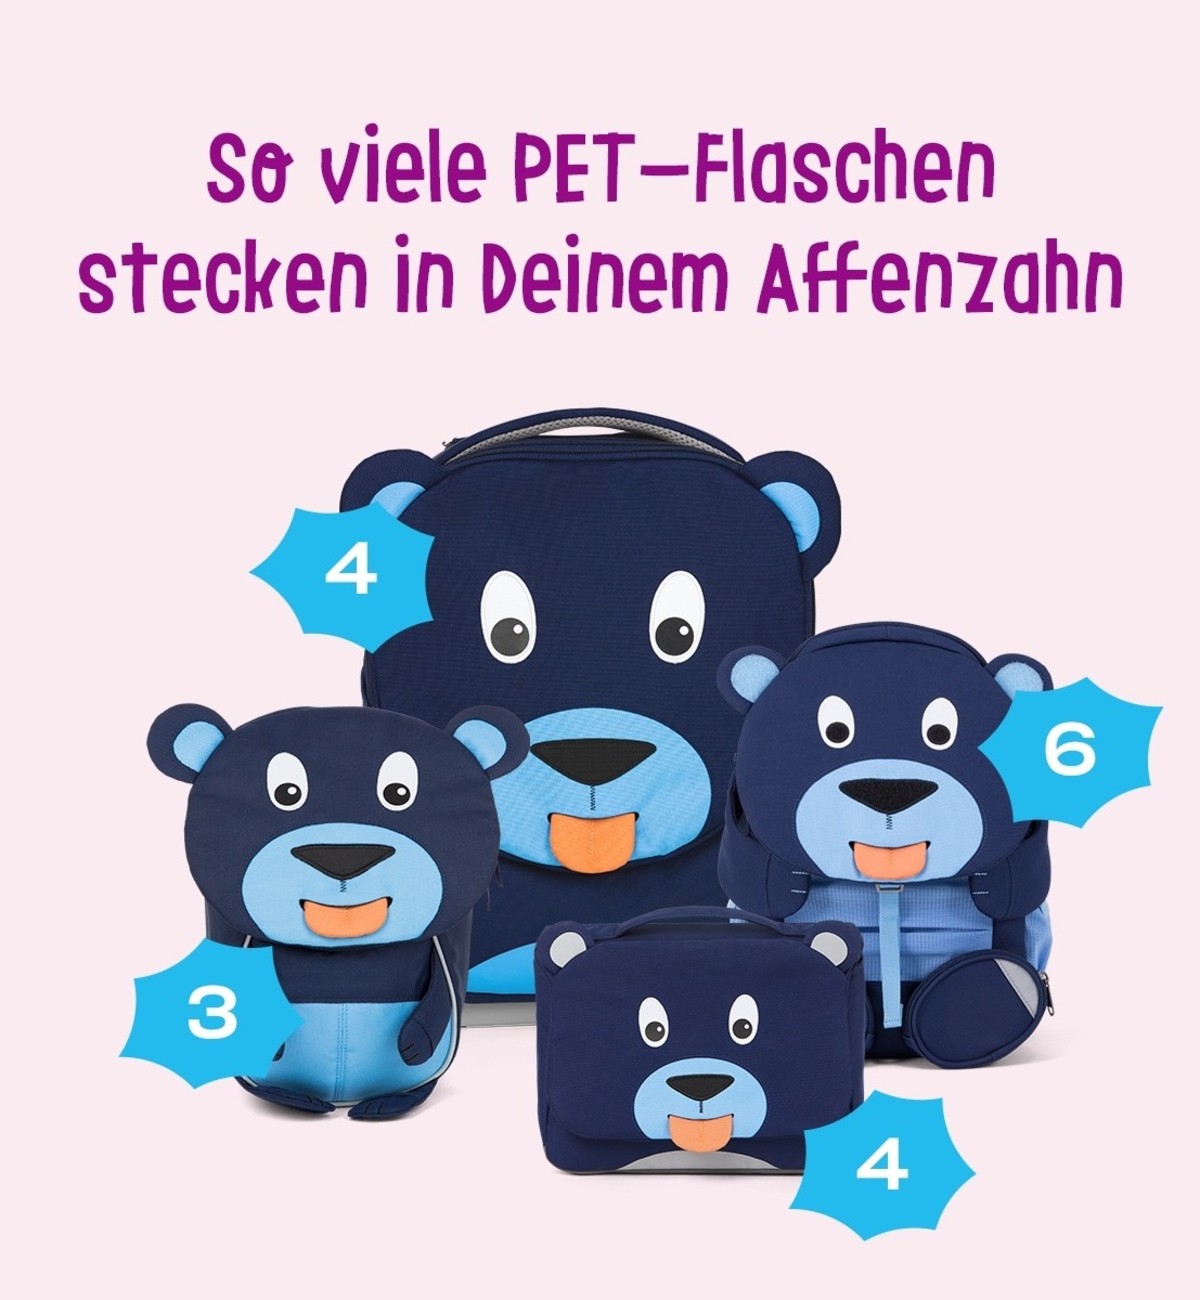 affenzahn-PET-Flaschen 1200x1300_DE